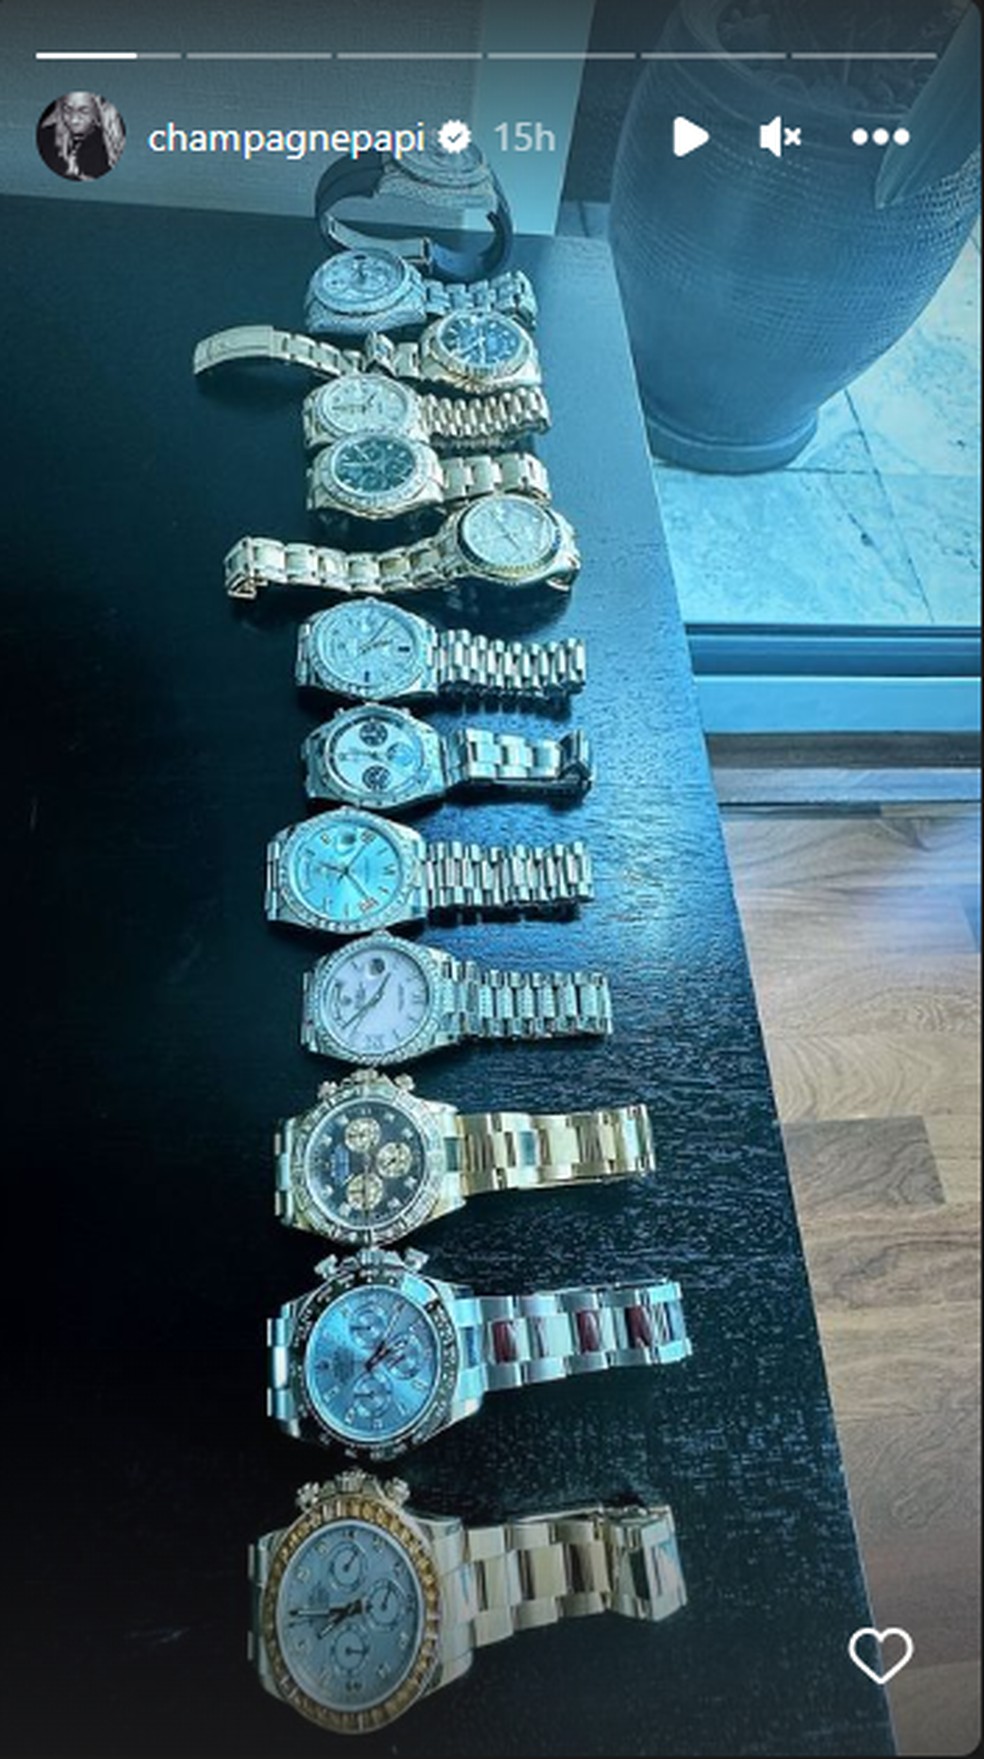 Coleção de relógios de Drake — Foto: Instagram